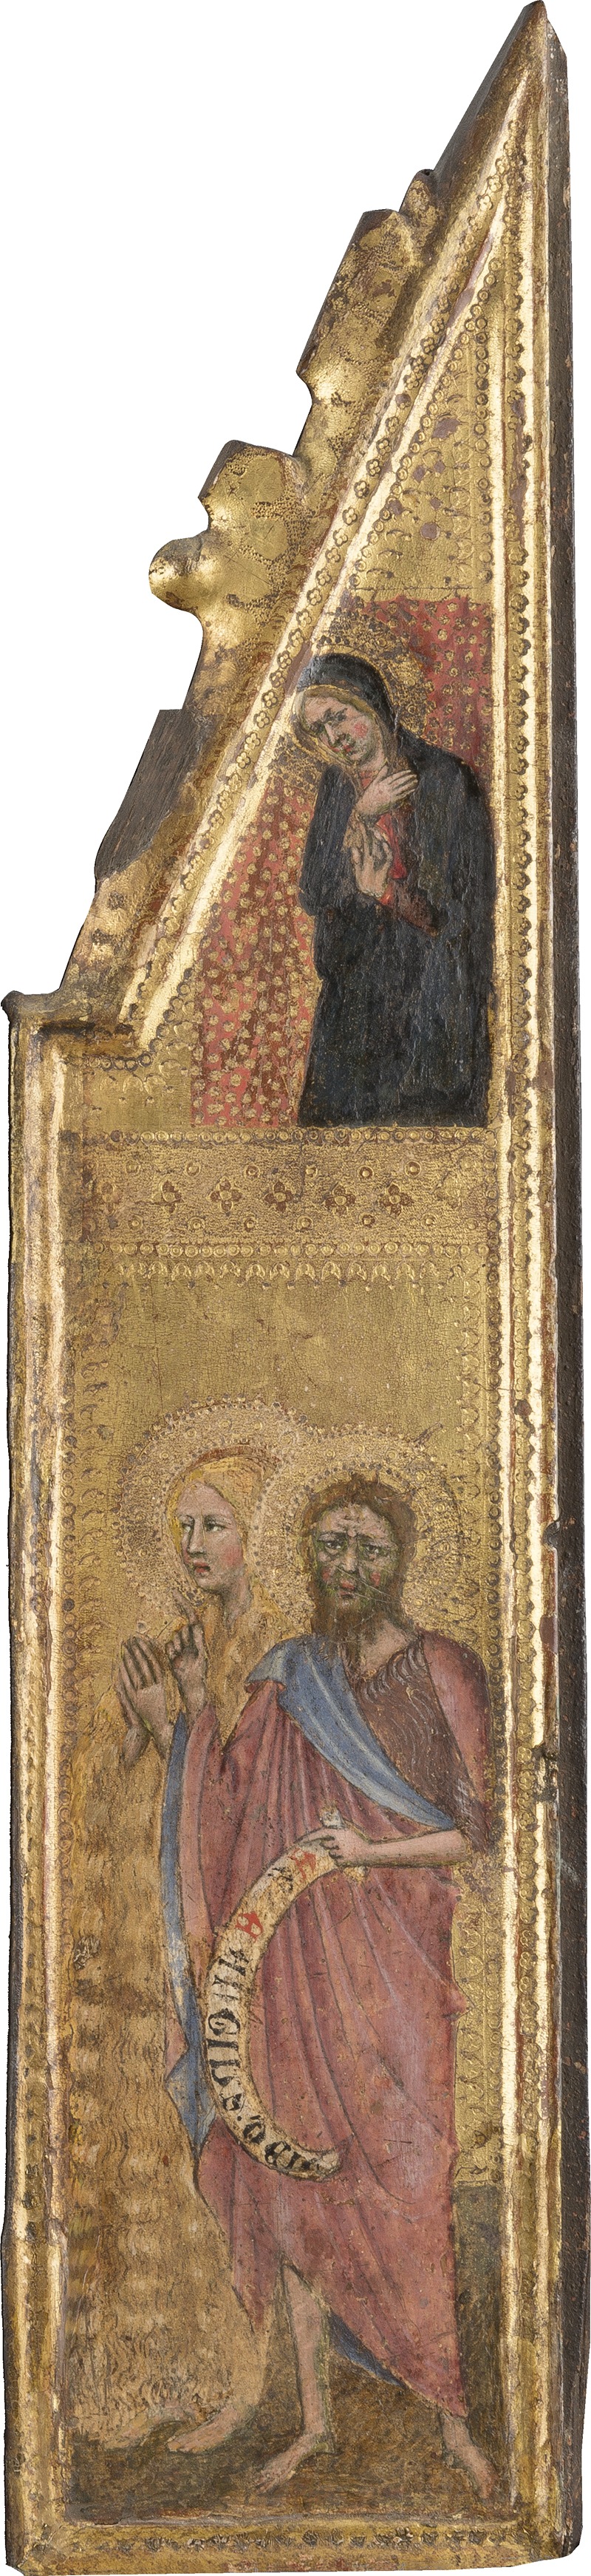 Cristoforo di Bindoccio - St. John the Baptist, Mary Egyptica, Maria Annunziata